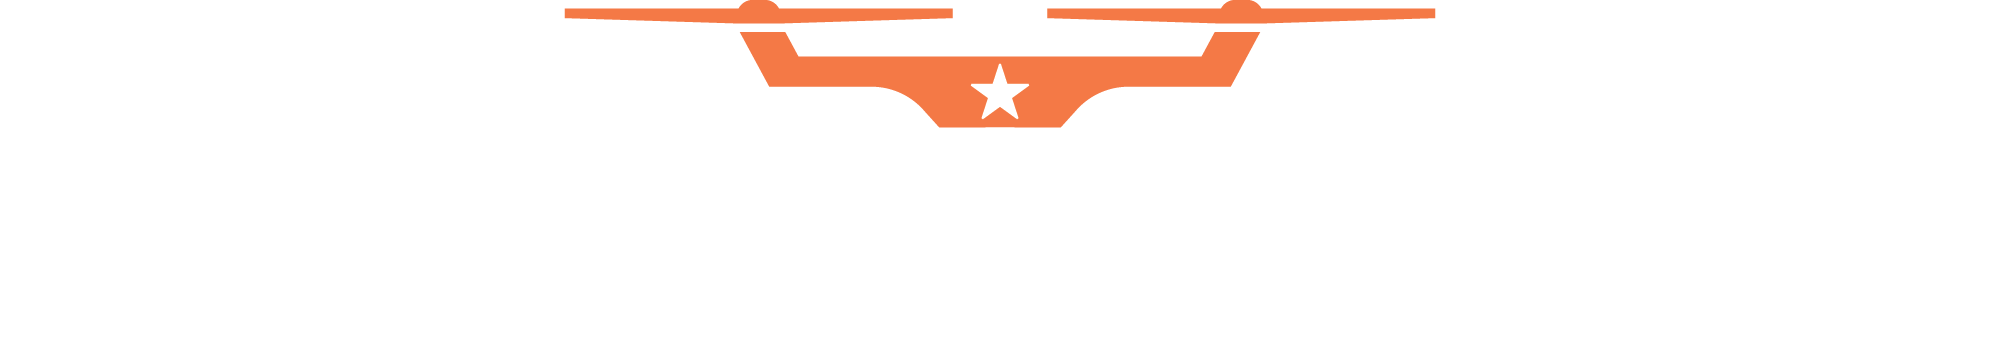 dronestar logo